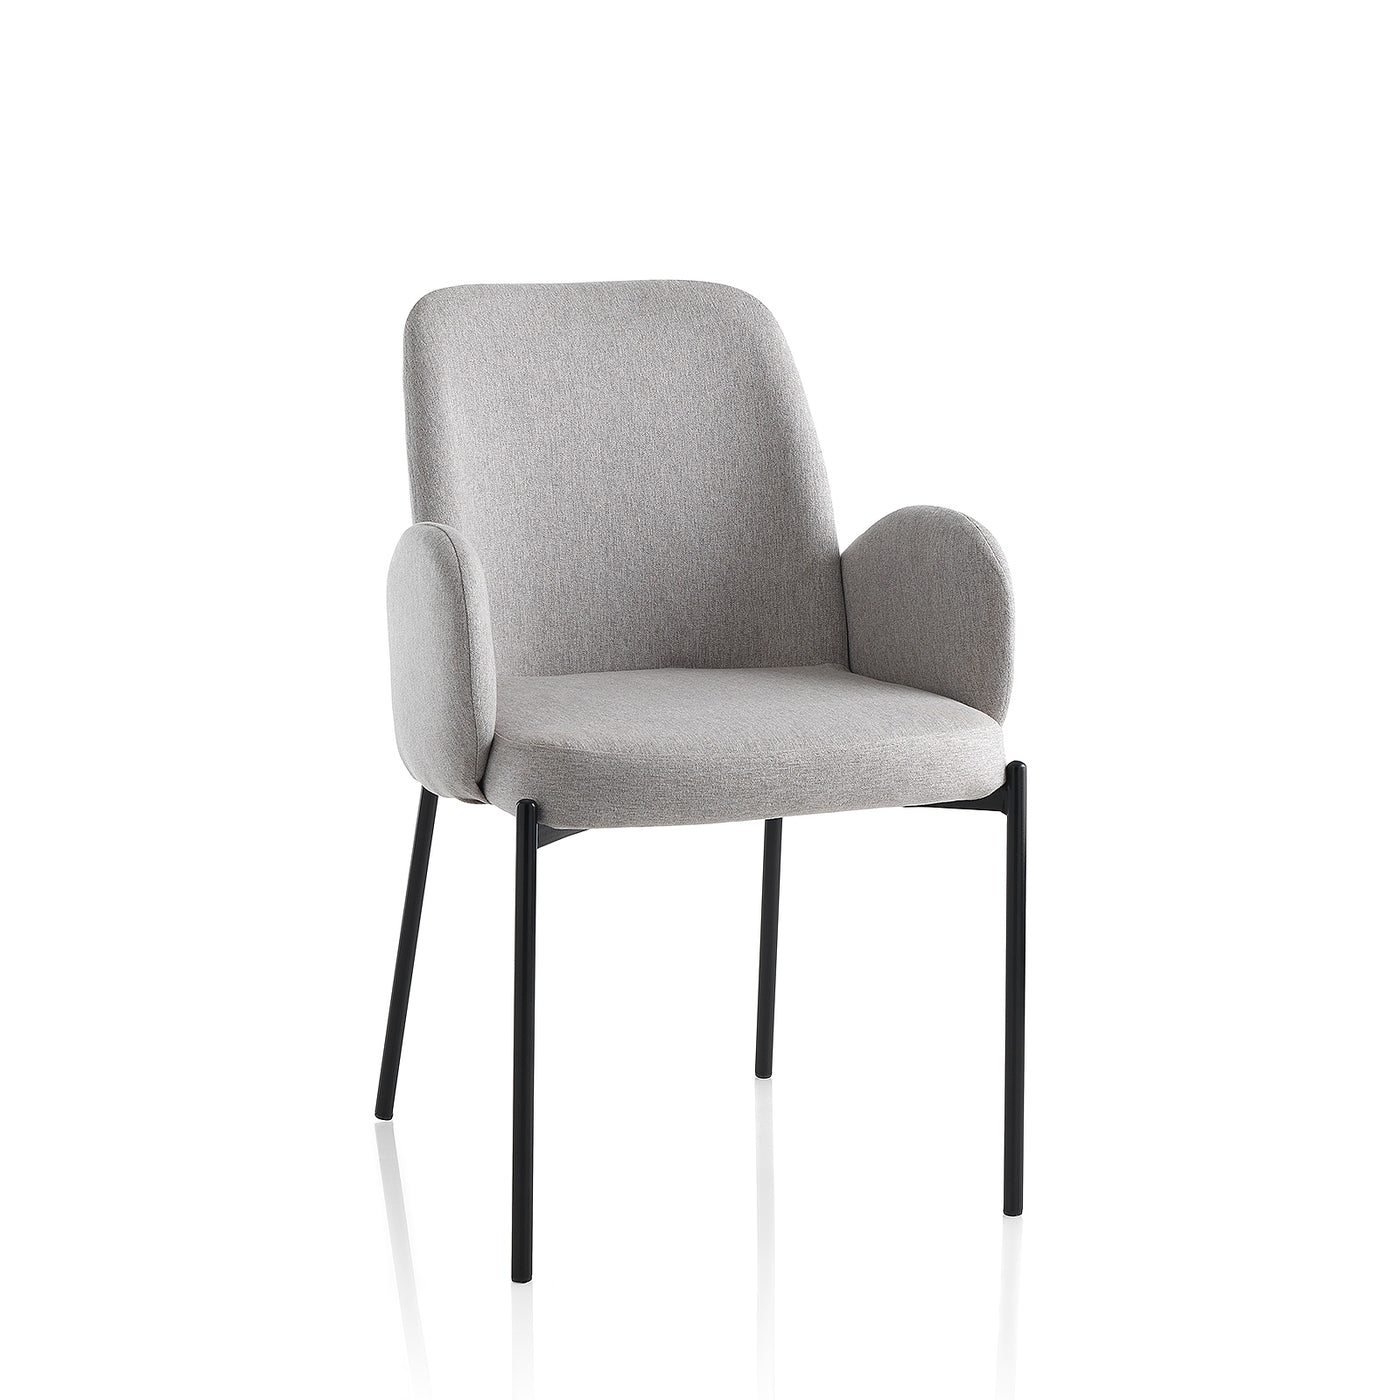 Set of 2 light gray KIS chairs